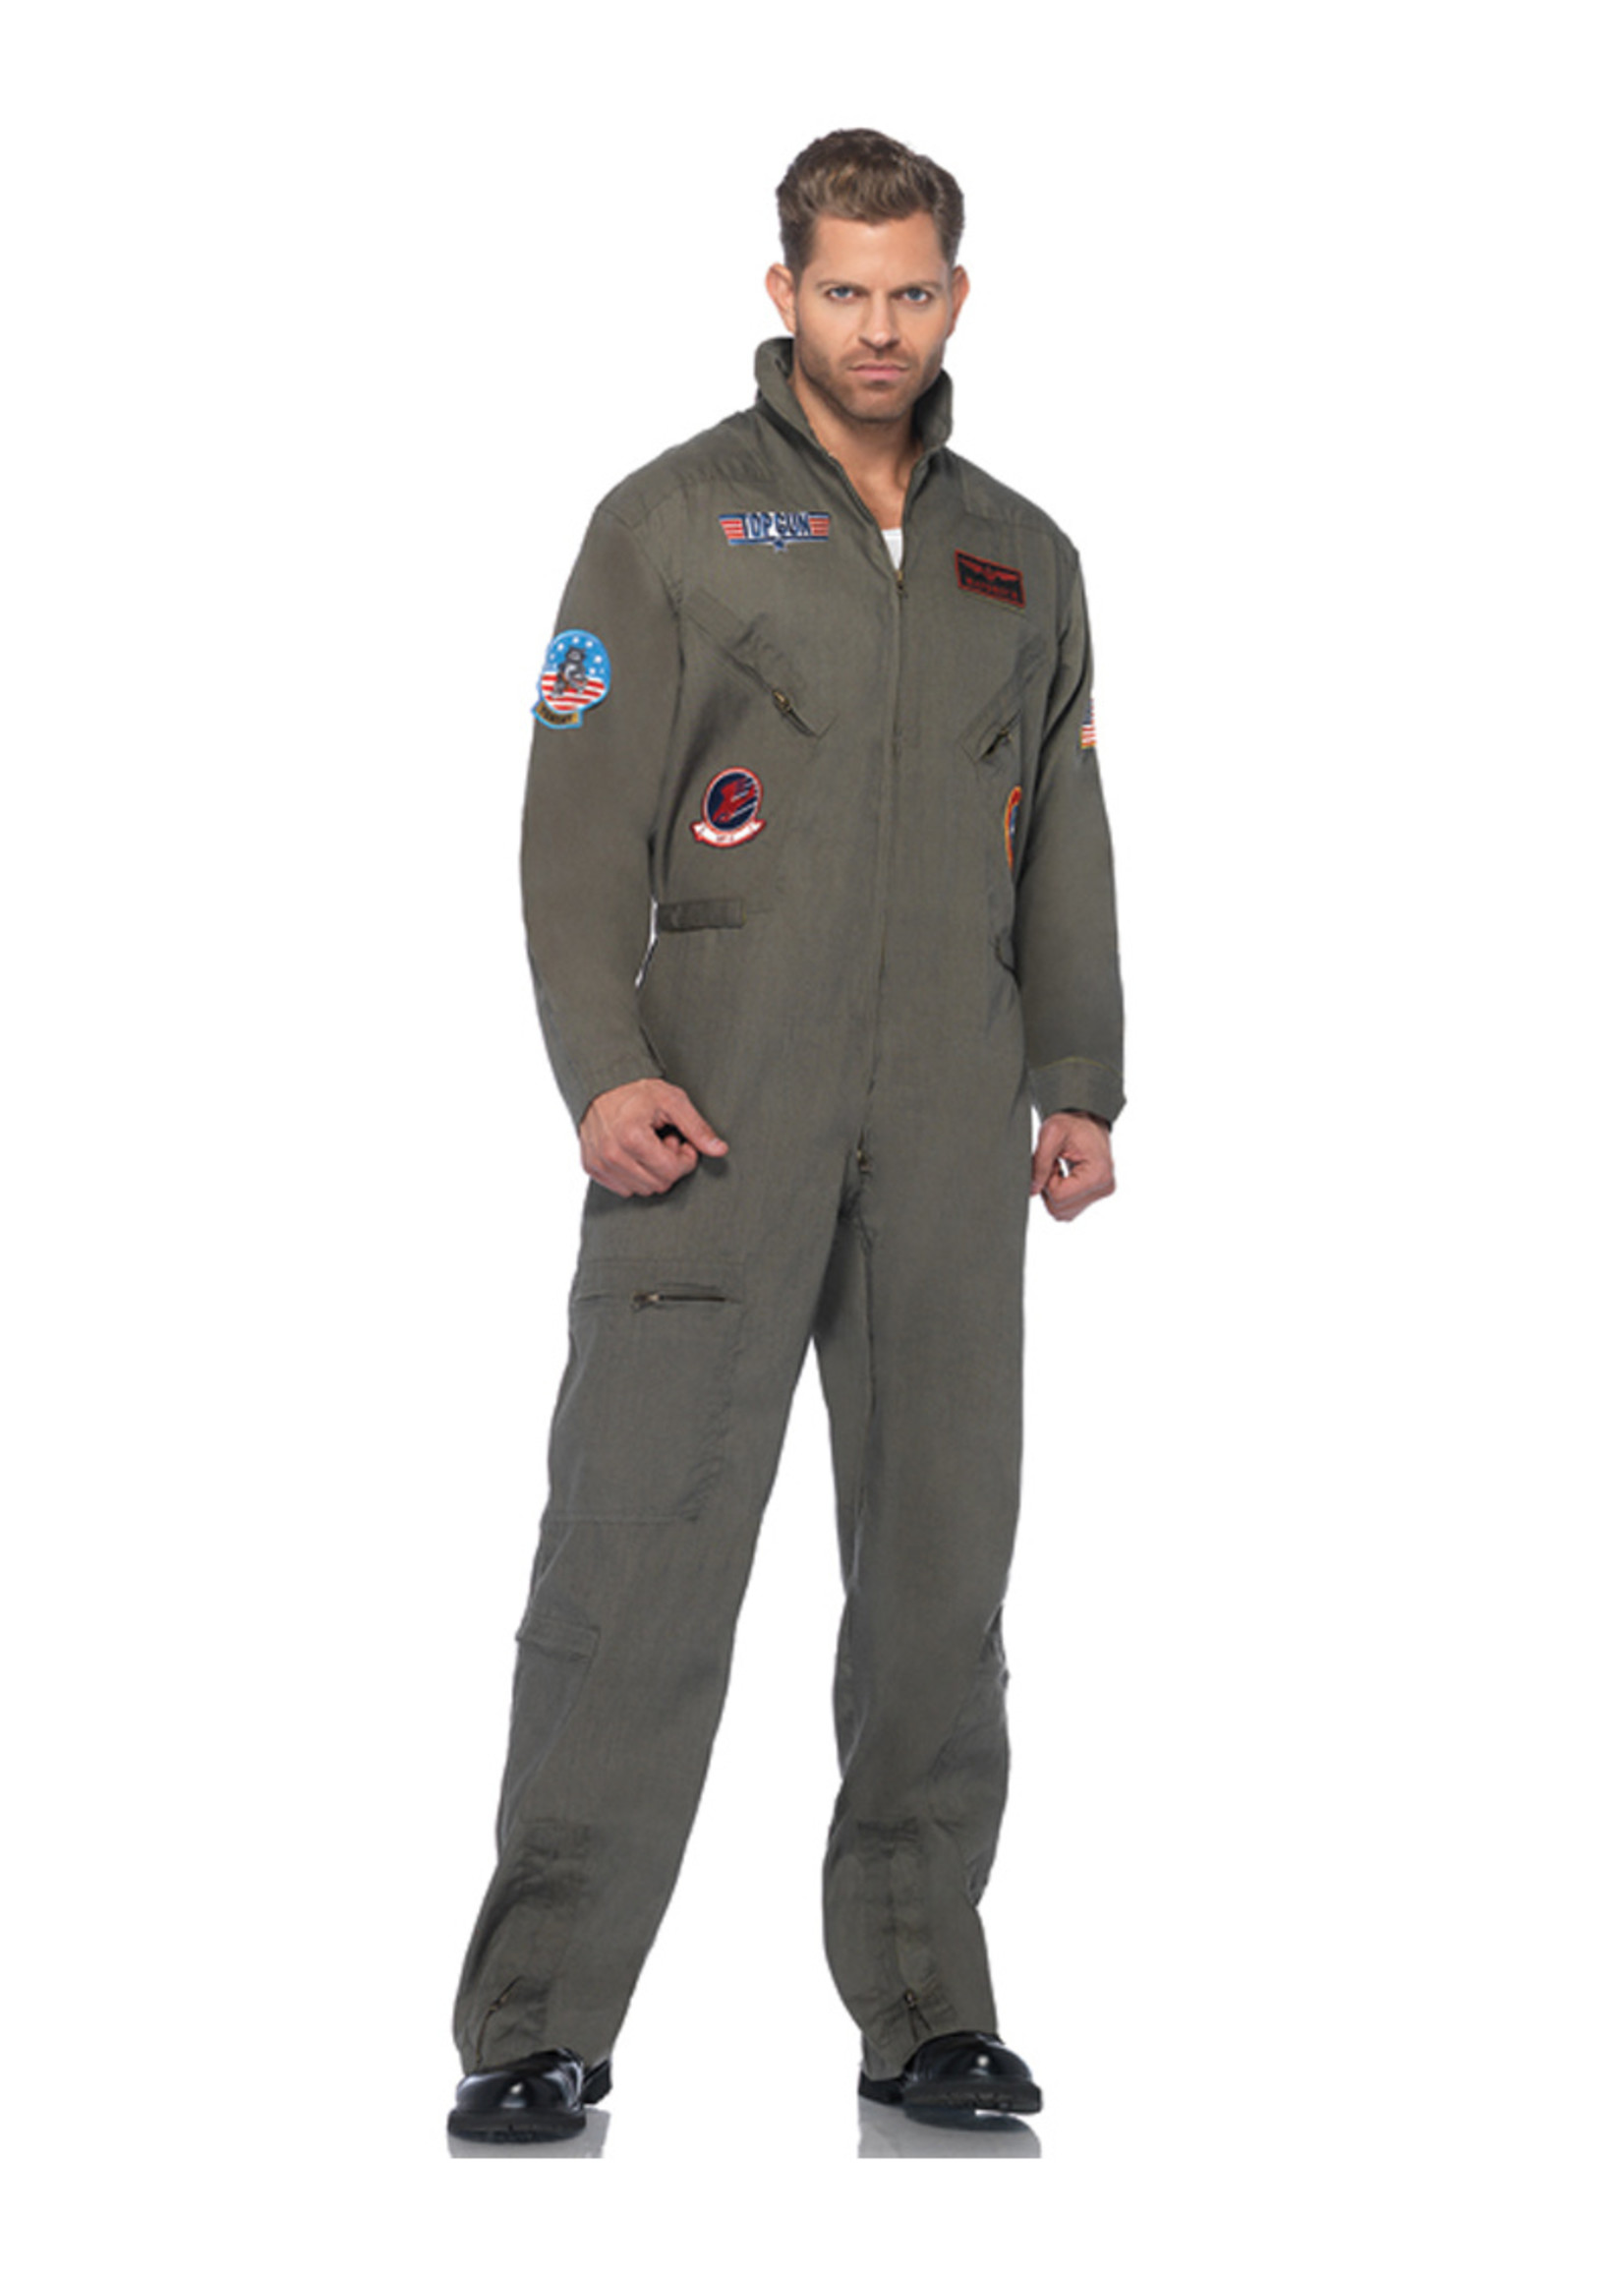 Top Gun Flight Suit Costume - Men's